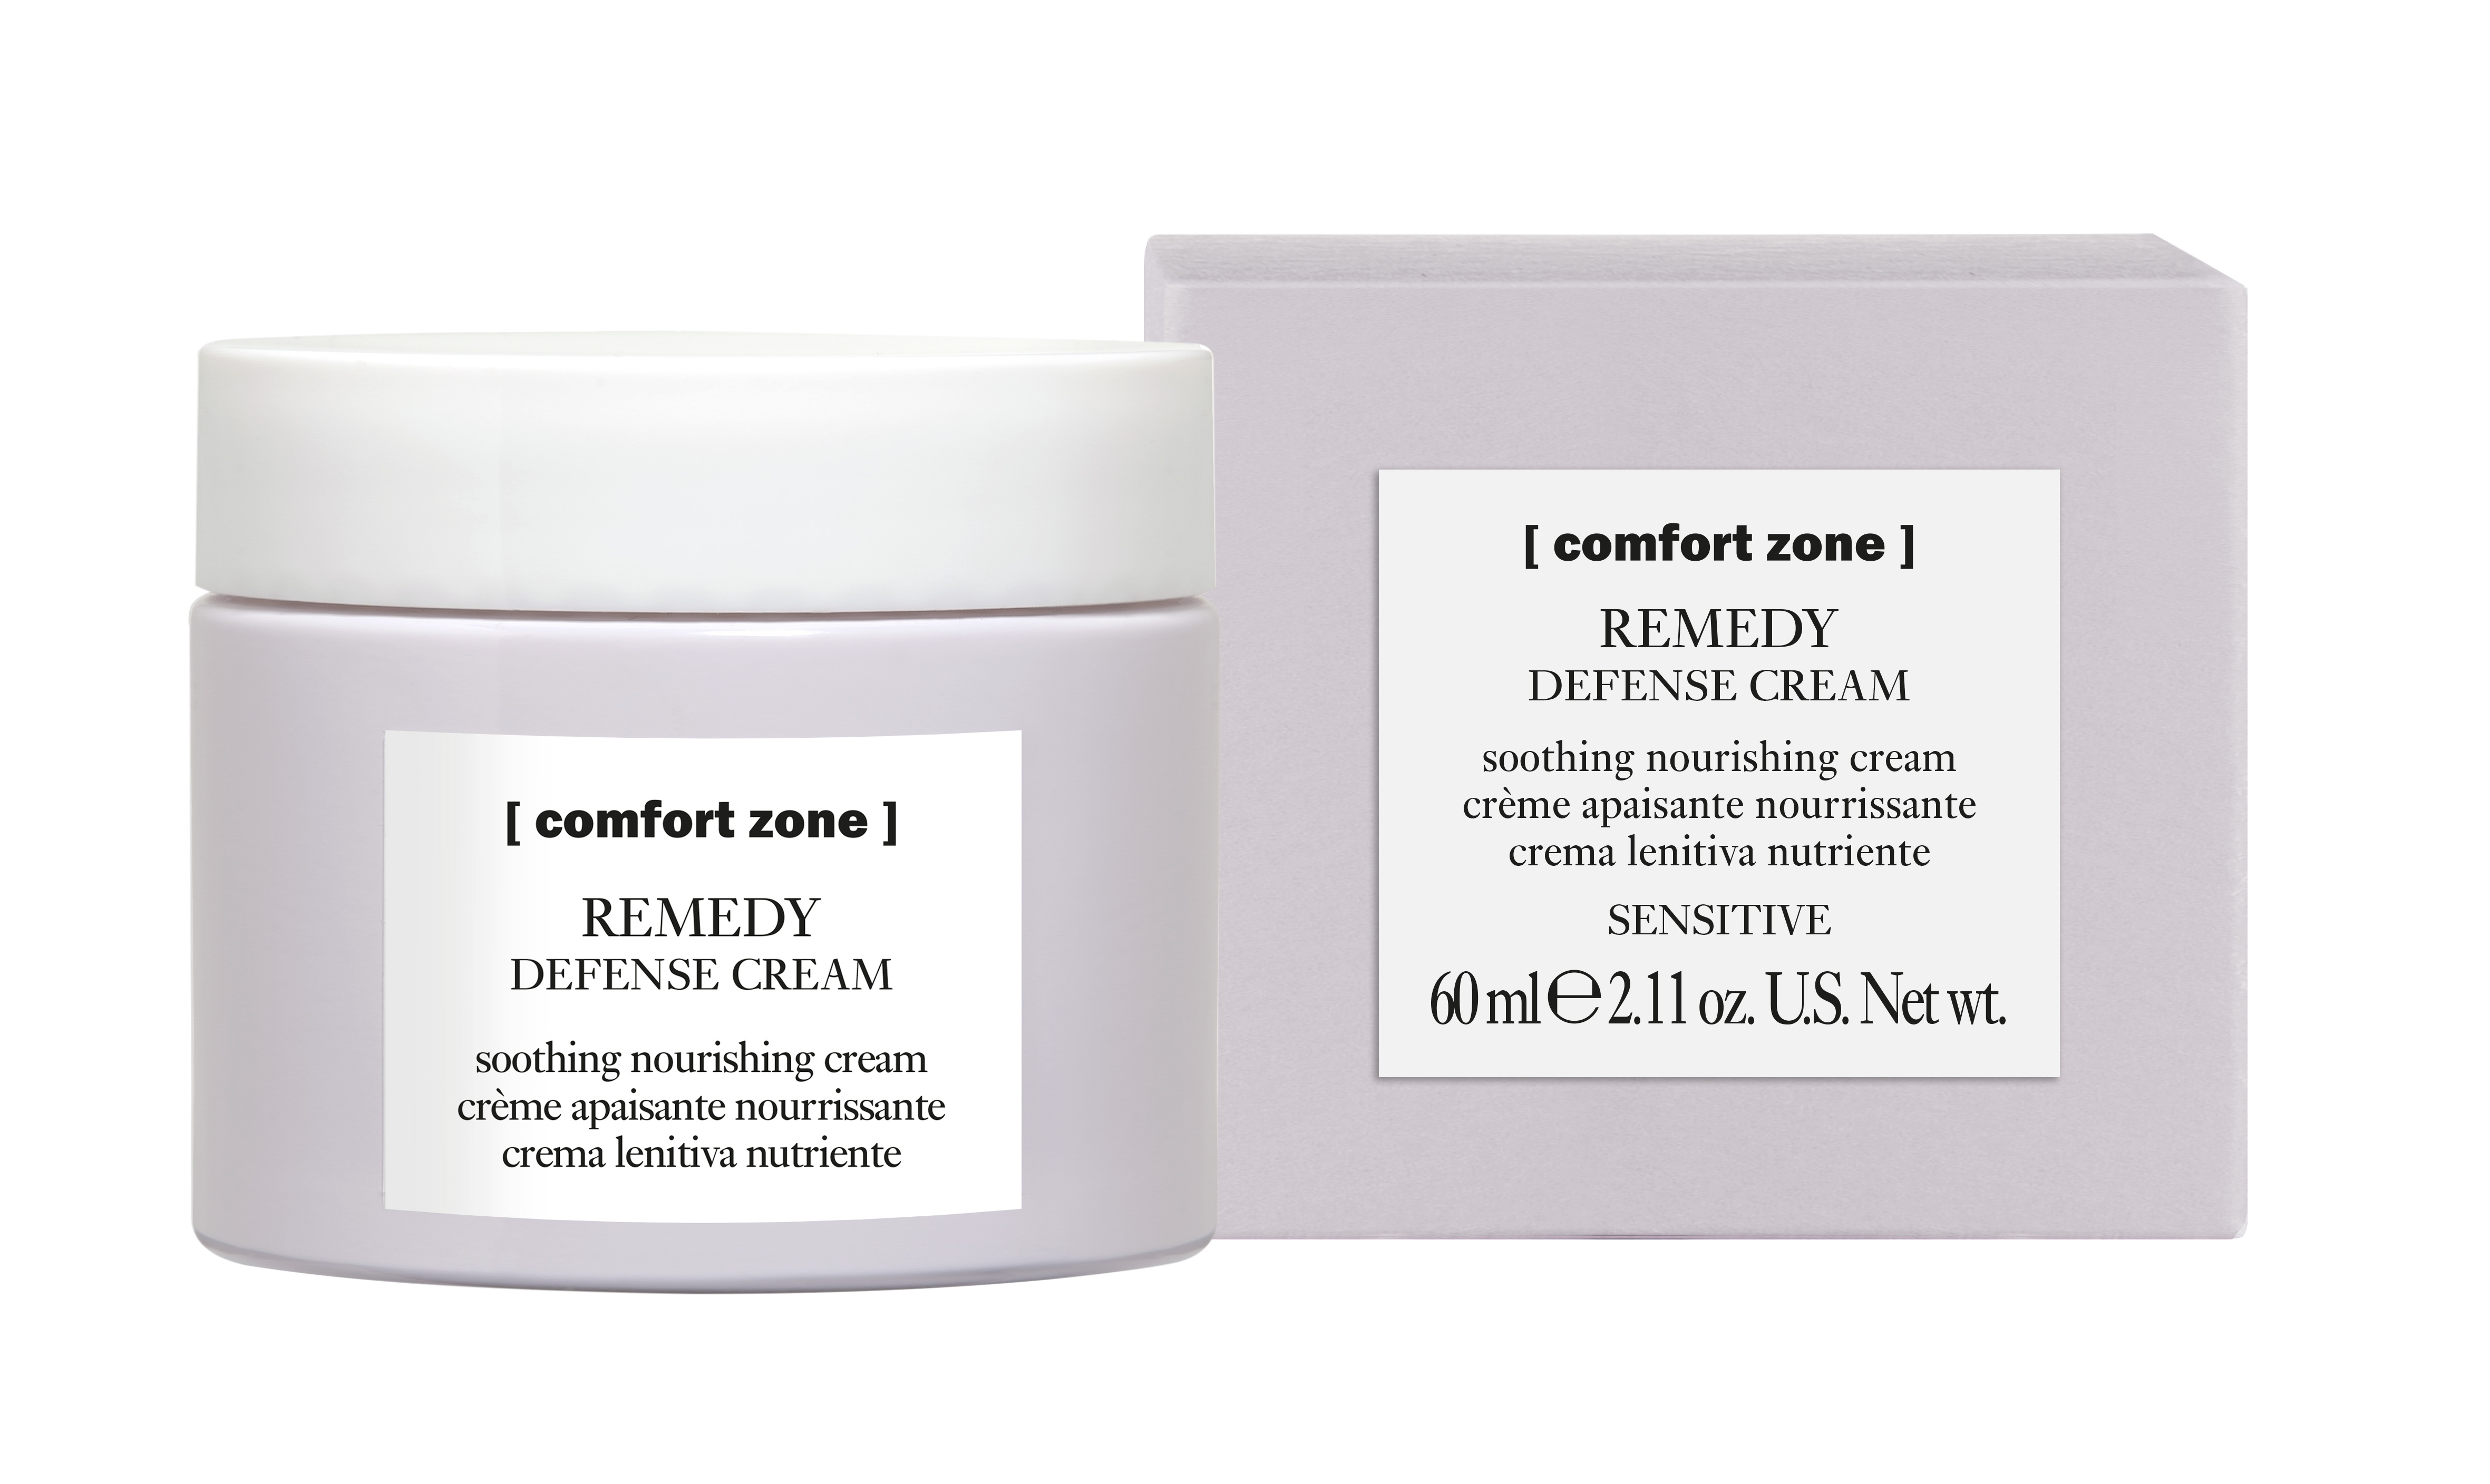  Remedy Defense Cream